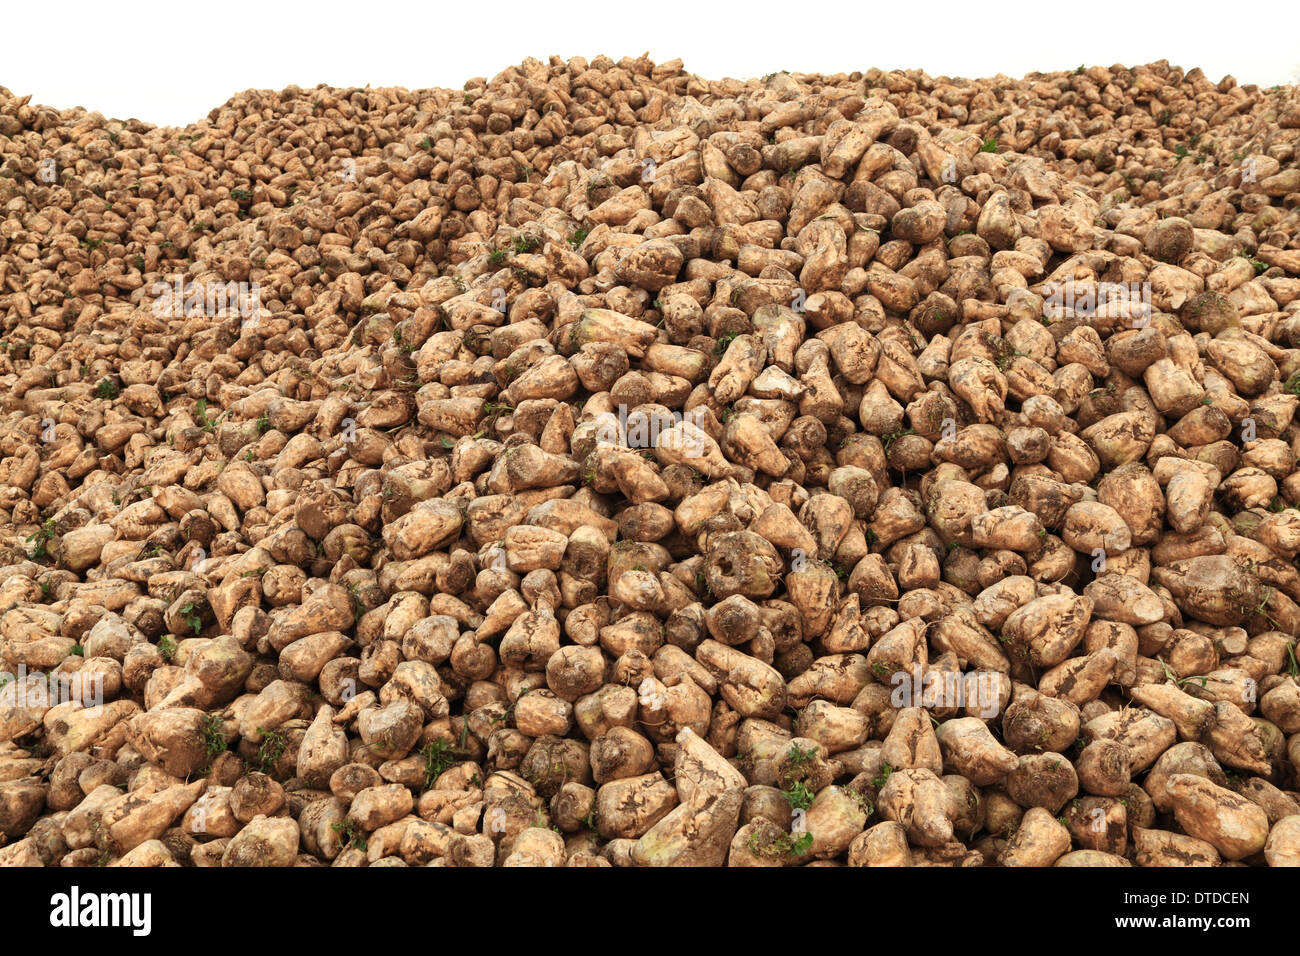 Le sucre de betterave, récoltés, Norfolk, Angleterre Royaume-uni récolte de betteraves à l'agriculture Banque D'Images